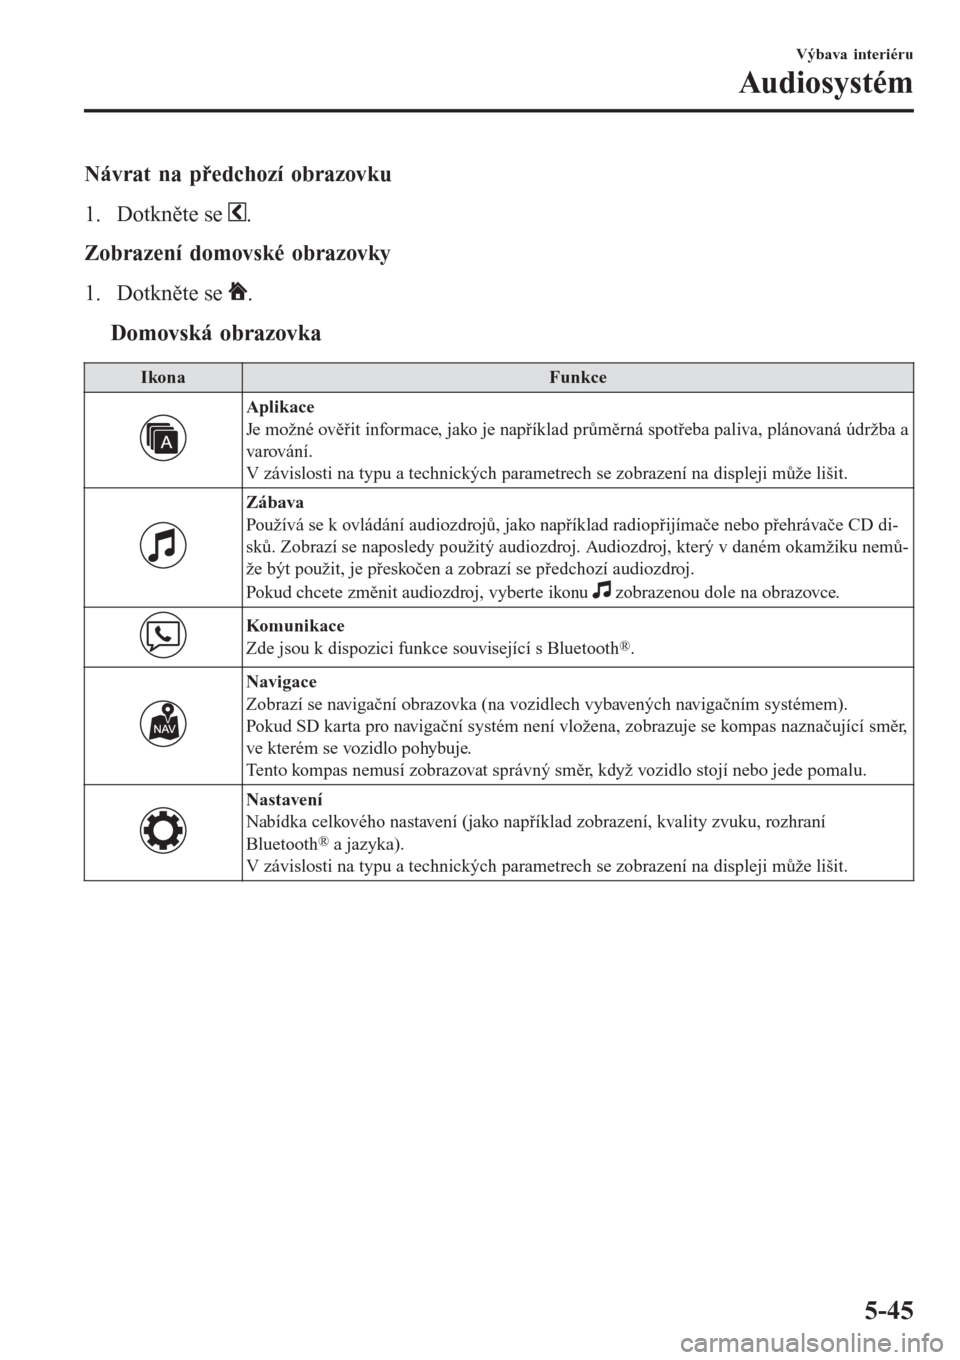 MAZDA MODEL CX-3 2015  Návod k obsluze (in Czech) Návrat na předchozí obrazovku
1. Dotkněte se 
.
Zobrazení domovské obrazovky
1. Dotkněte se 
.
ttDomovská obrazovka
IkonaFunkce
Aplikace
Je možné ověřit informace, jako je například prů